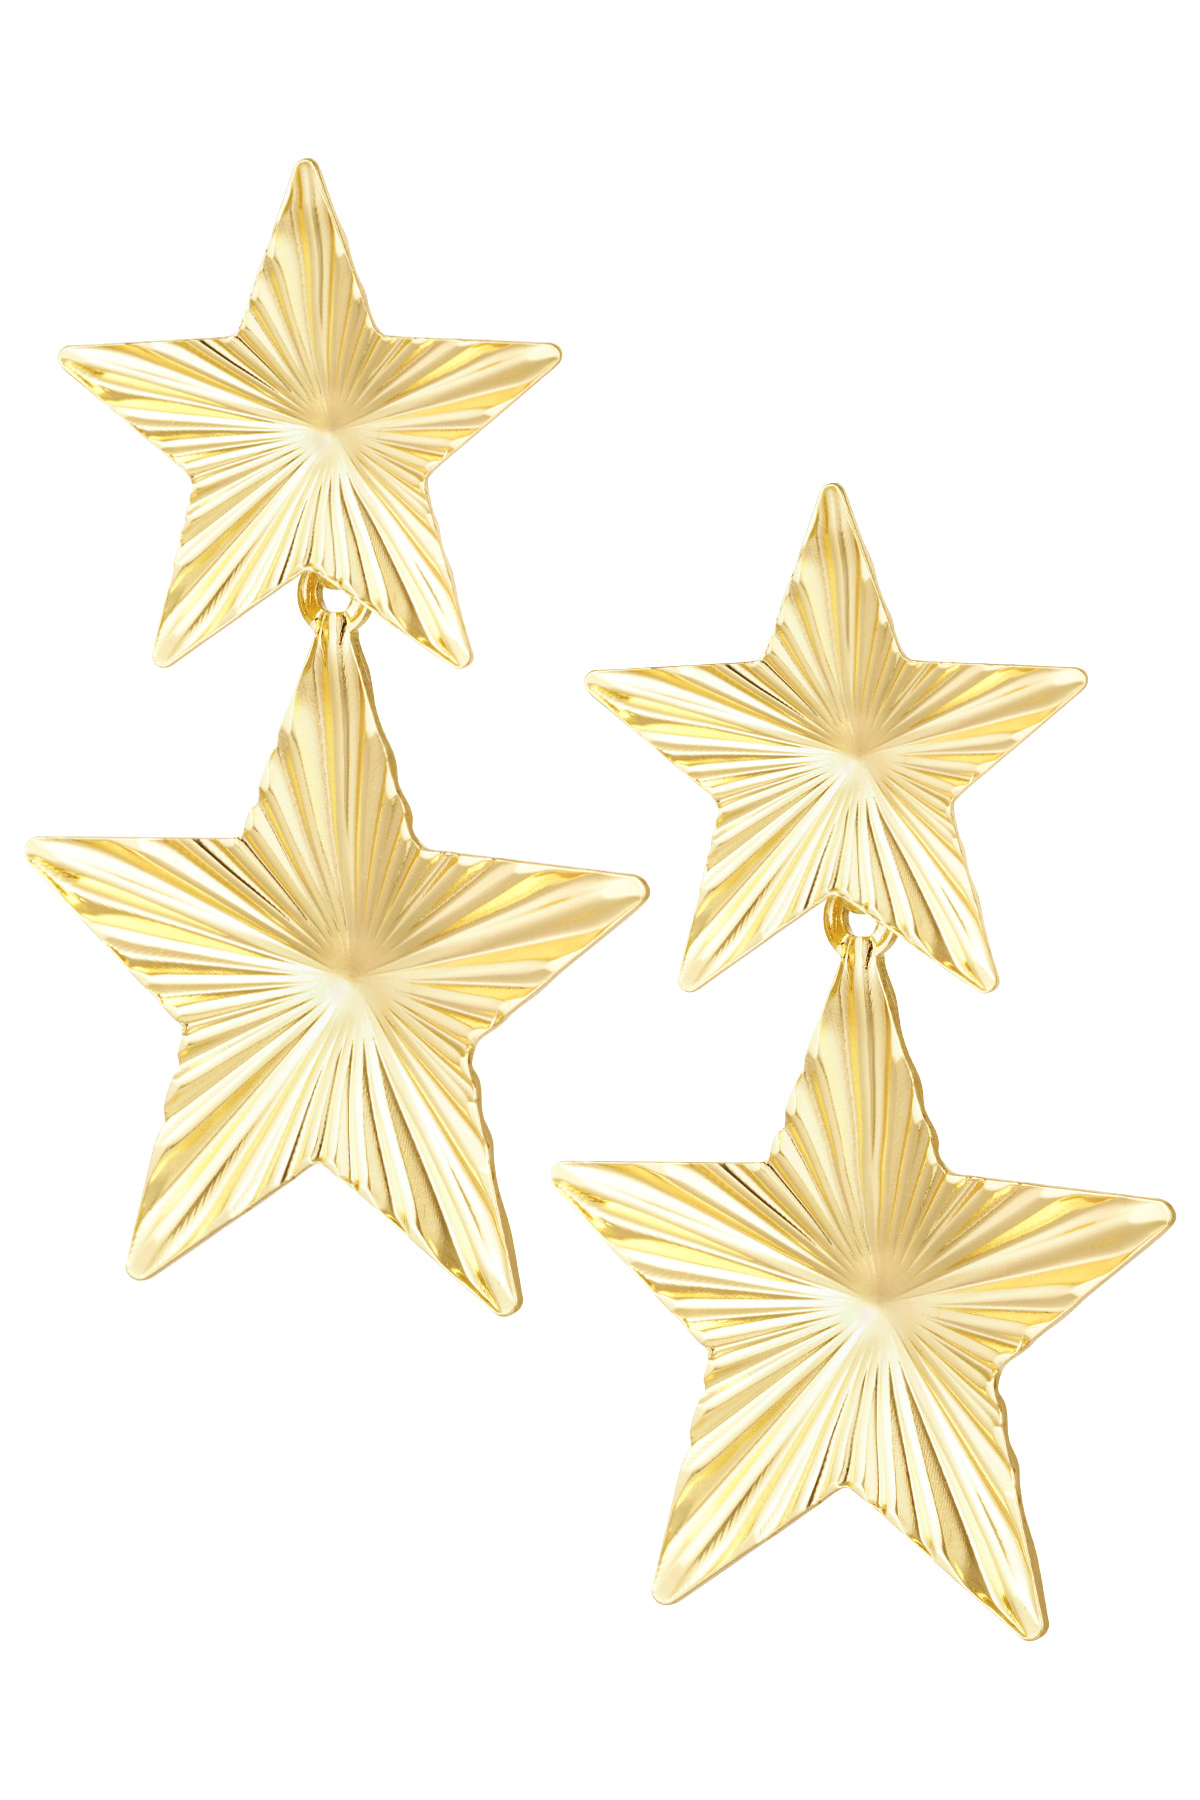 Baskılı 2 yıldız küpe - altın 